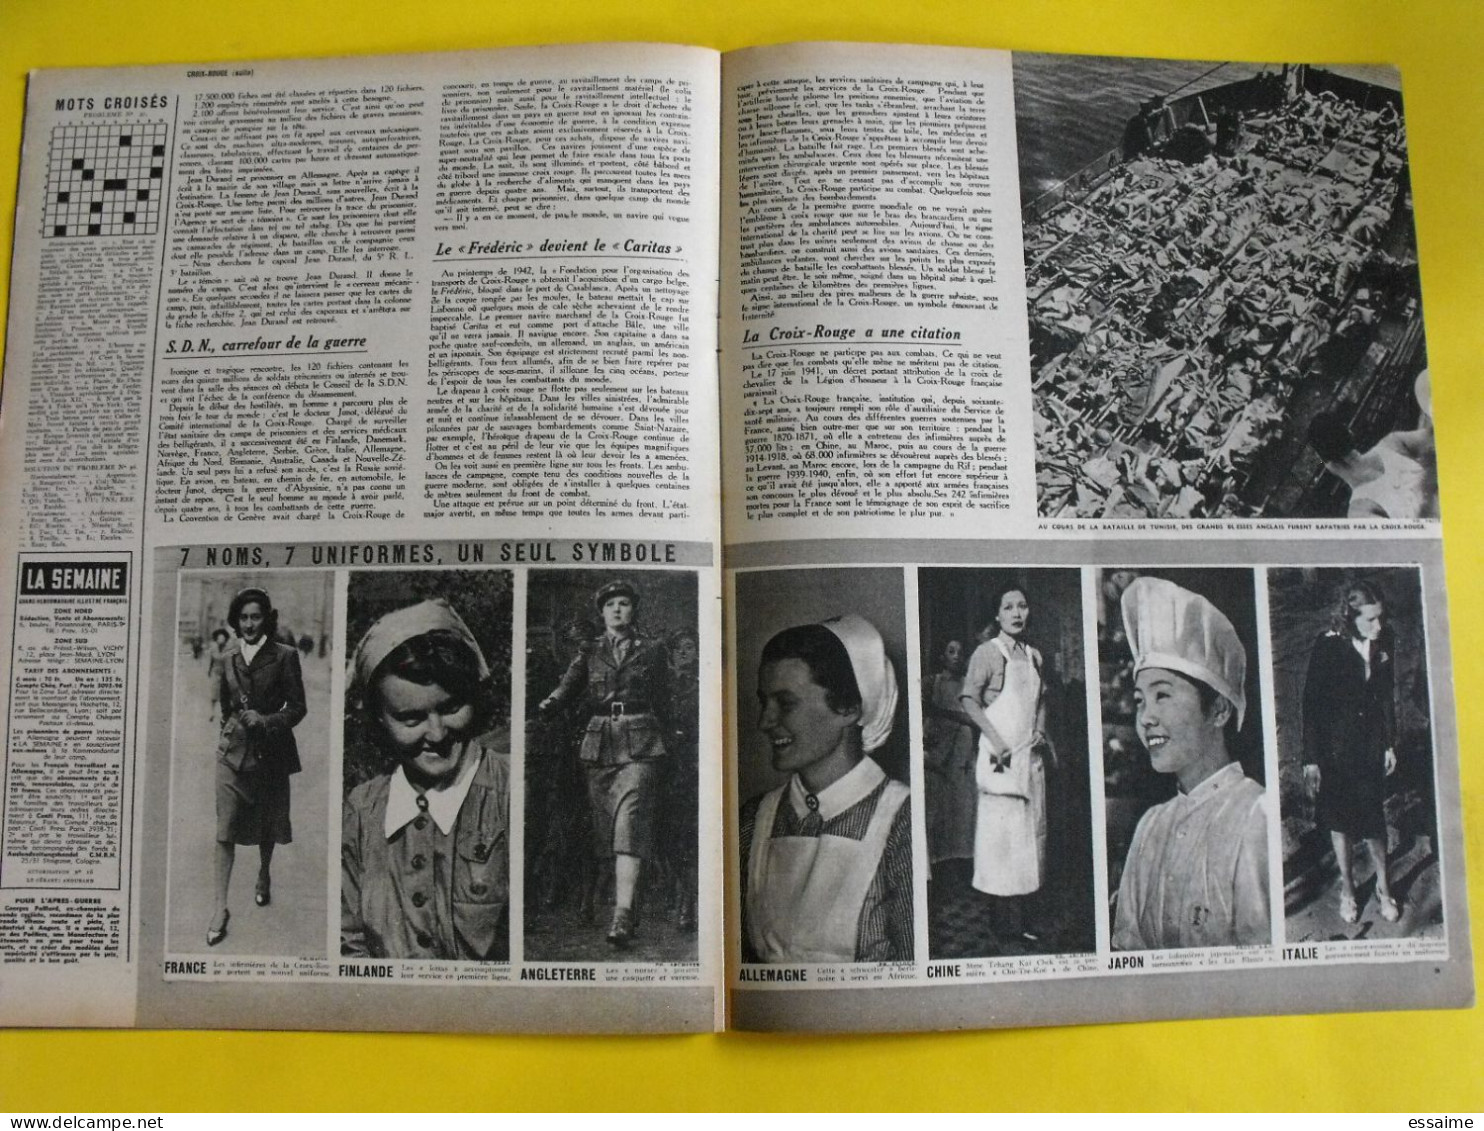 6 revues La semaine de 1943-44. actualités guerre photos collaboration japon thailande siam bamaw boxe raimu